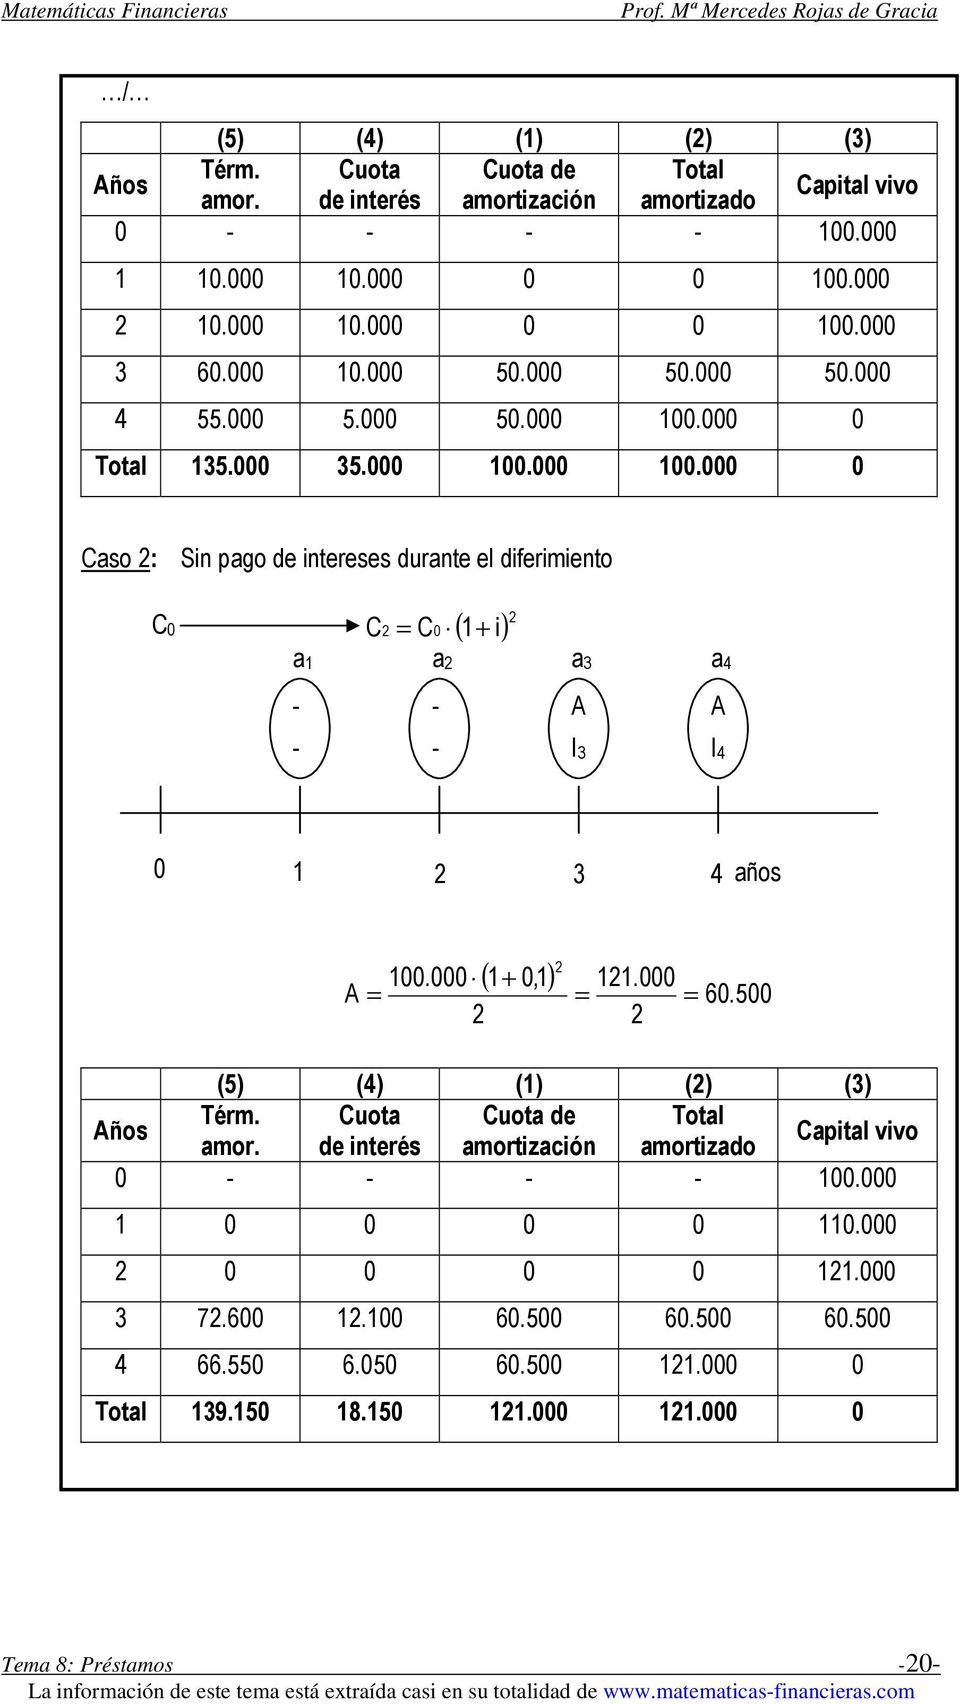 Total 135. 35. 1. 1. Caso 2: Sn pago de ntereses durante el dfermento C + 2 = C 1 C ( ) 2 a1 a2 a3 a4 - - - - I3 I4 1 2 3 4 años 1.